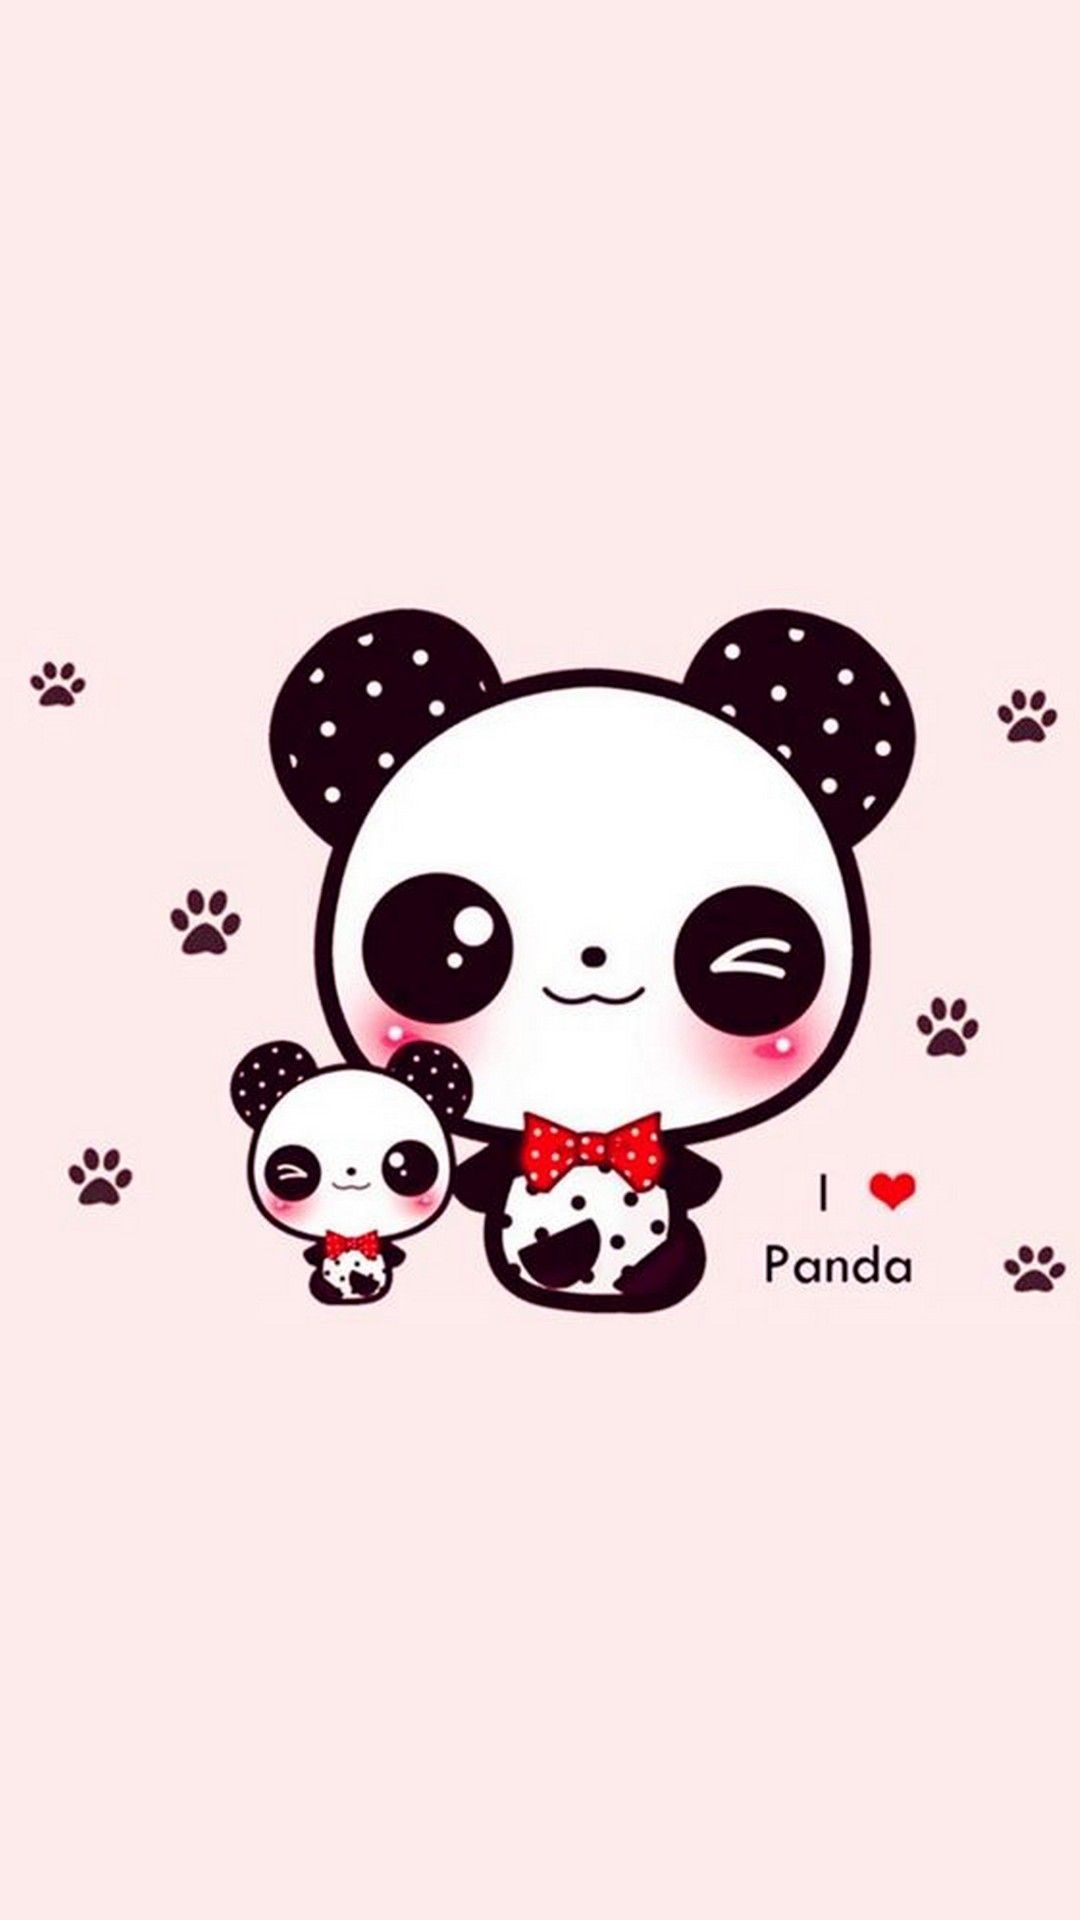 panda image wallpaper best